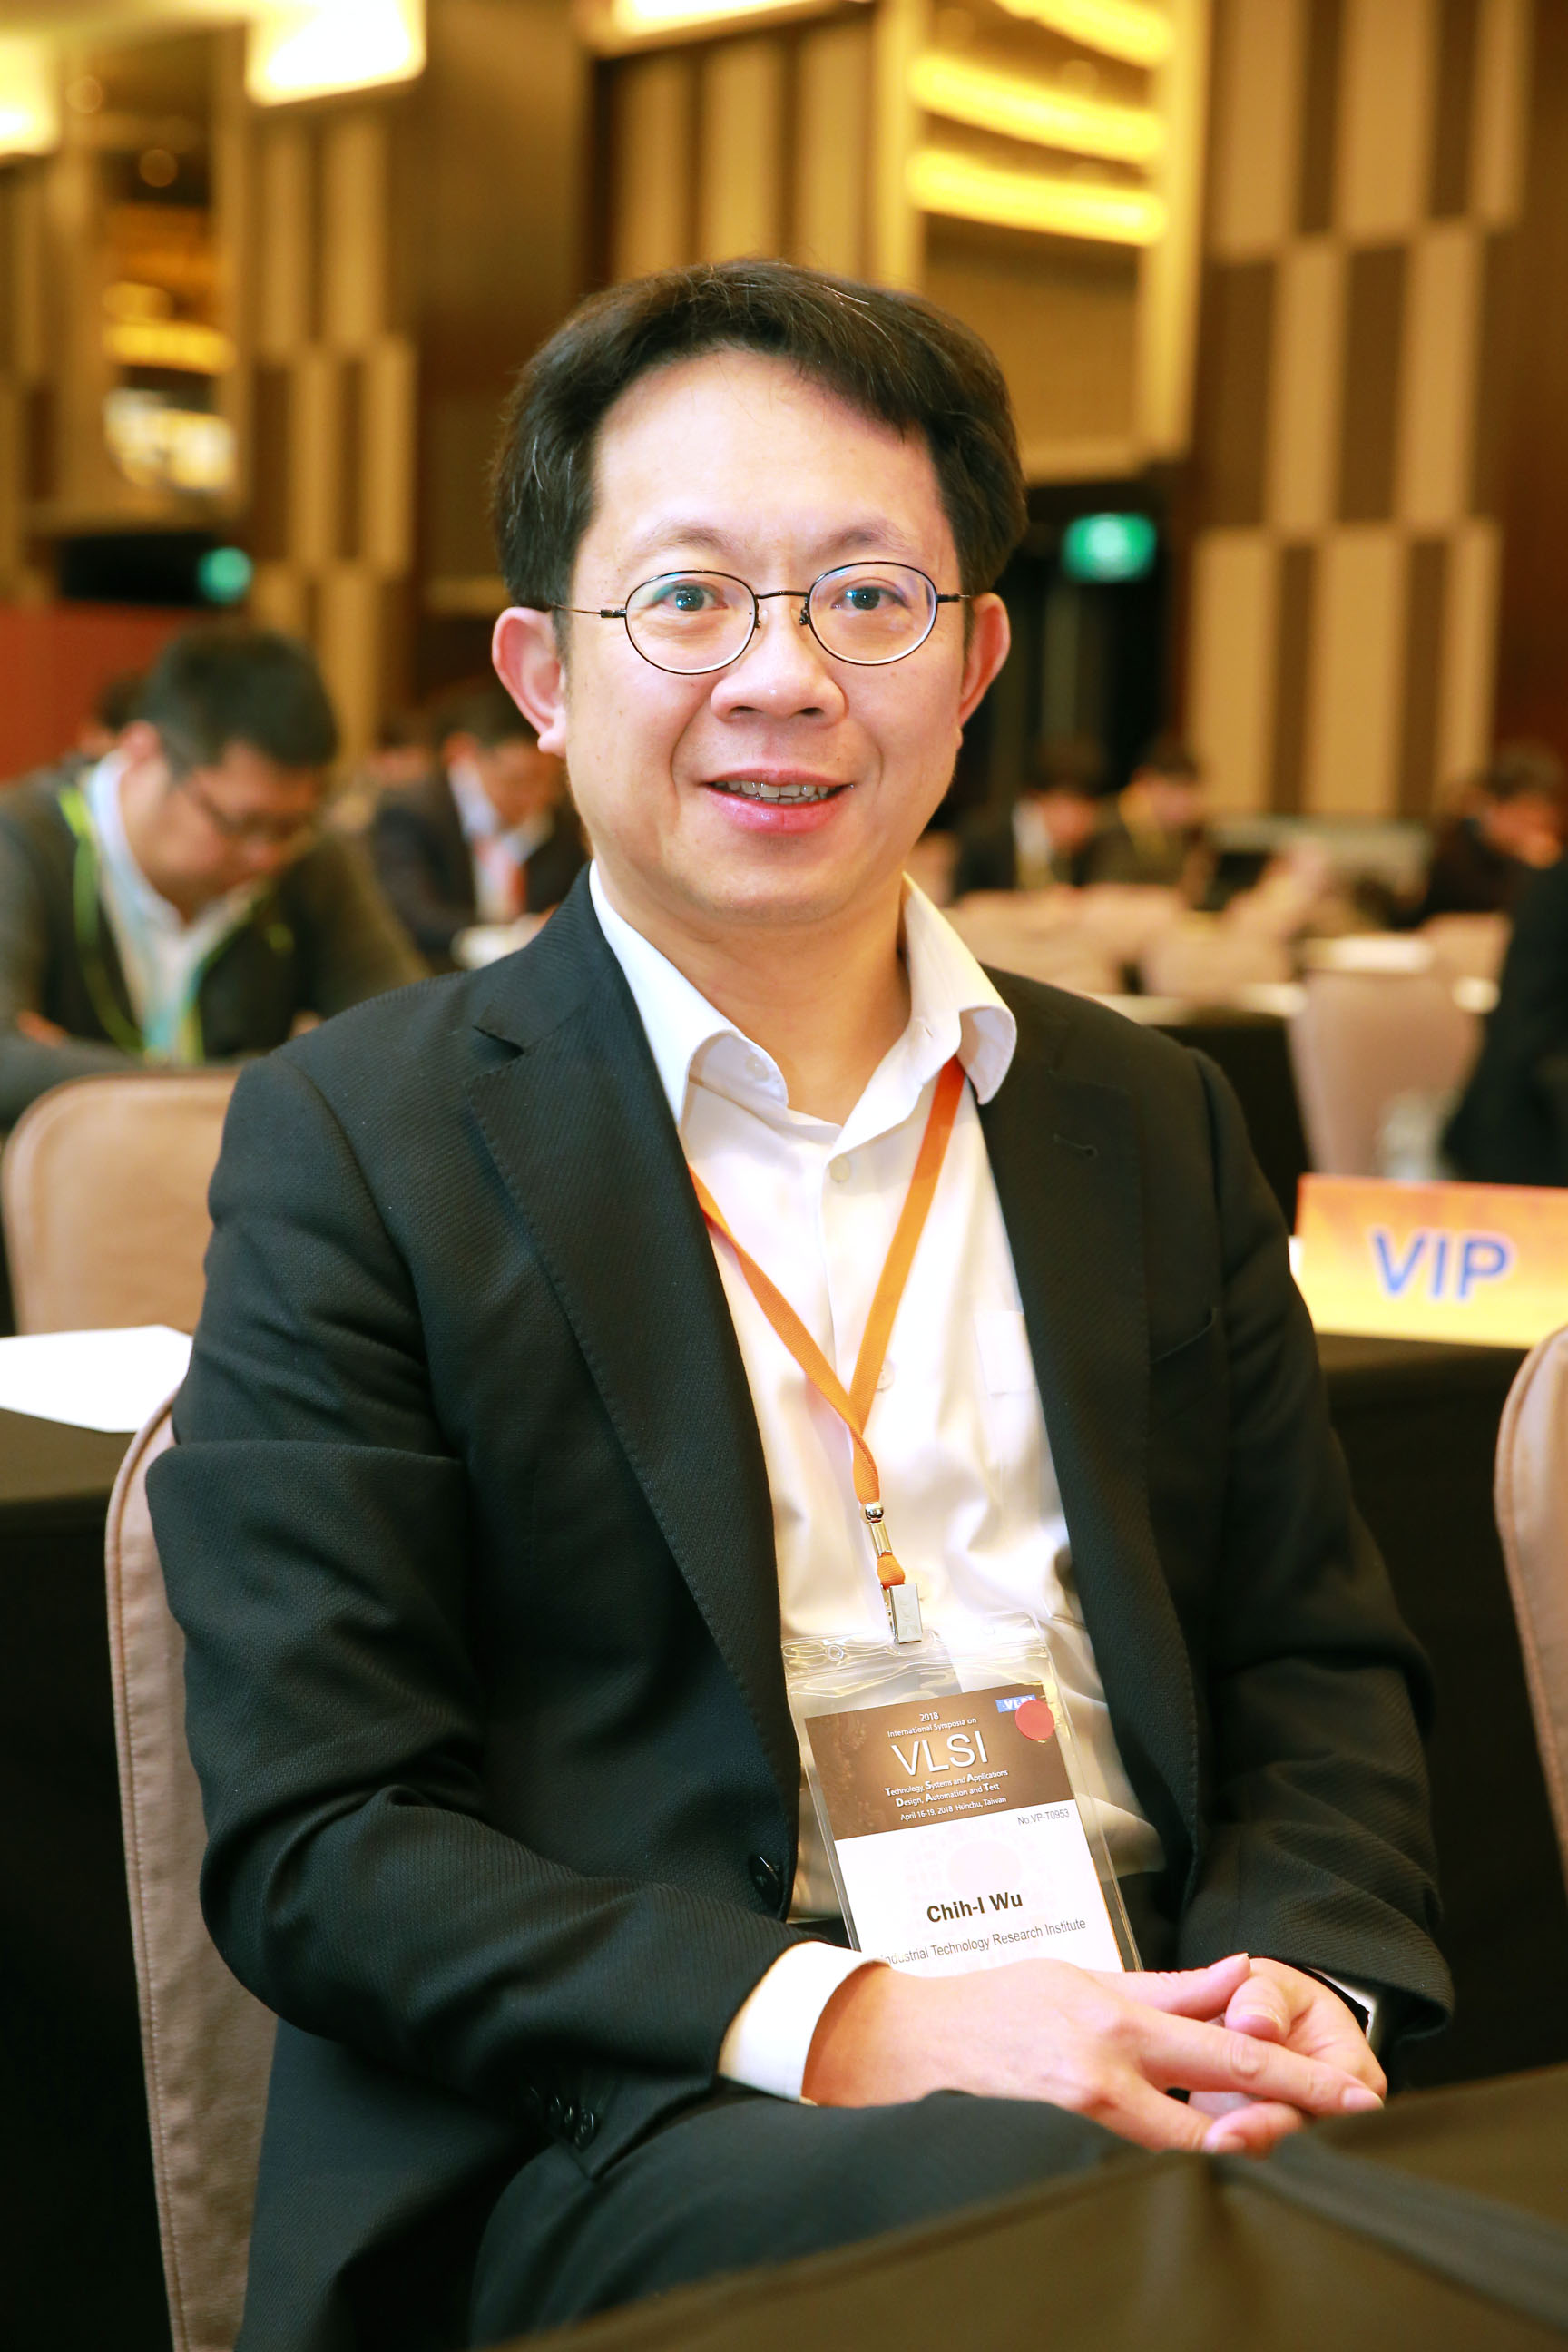 工研院電光所所長吳志毅認為，台灣的半導體產業鏈完整，未來可加強軟硬體技術開發，強化產業鏈的上中下游整合，及人才的培育，提升整體競爭優勢。